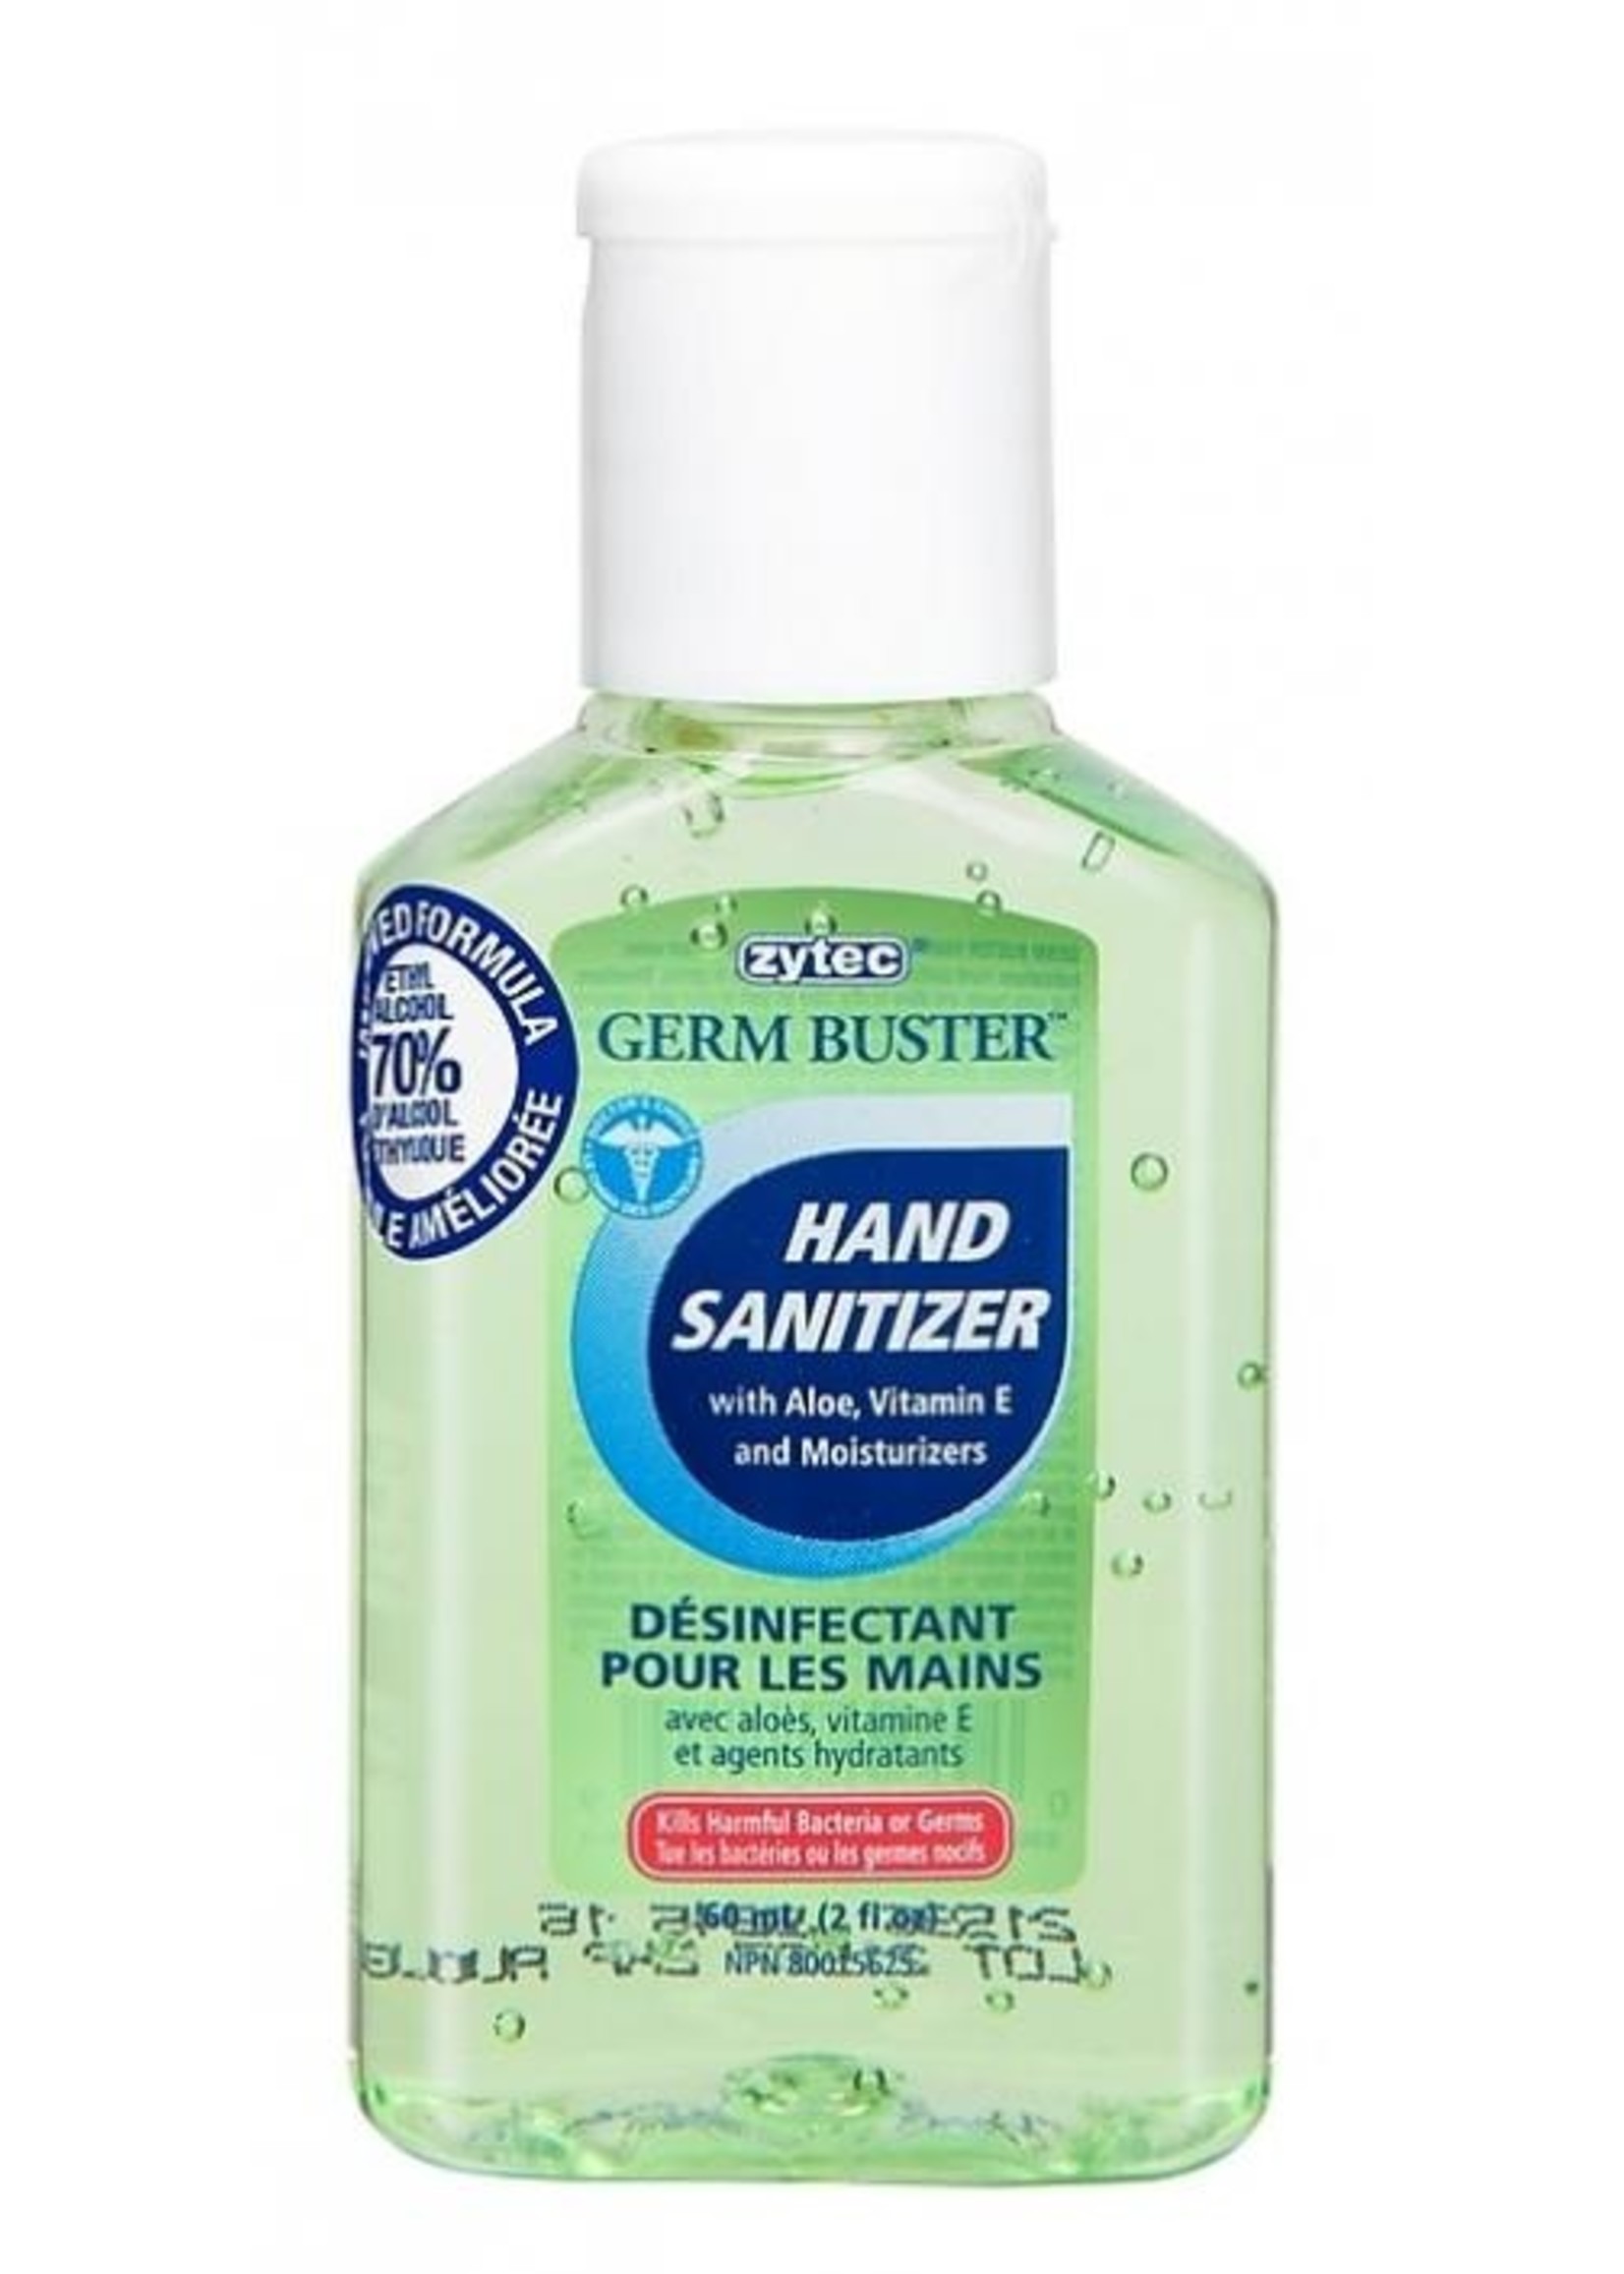 Hand Sanitizer "Zytec" 60ml